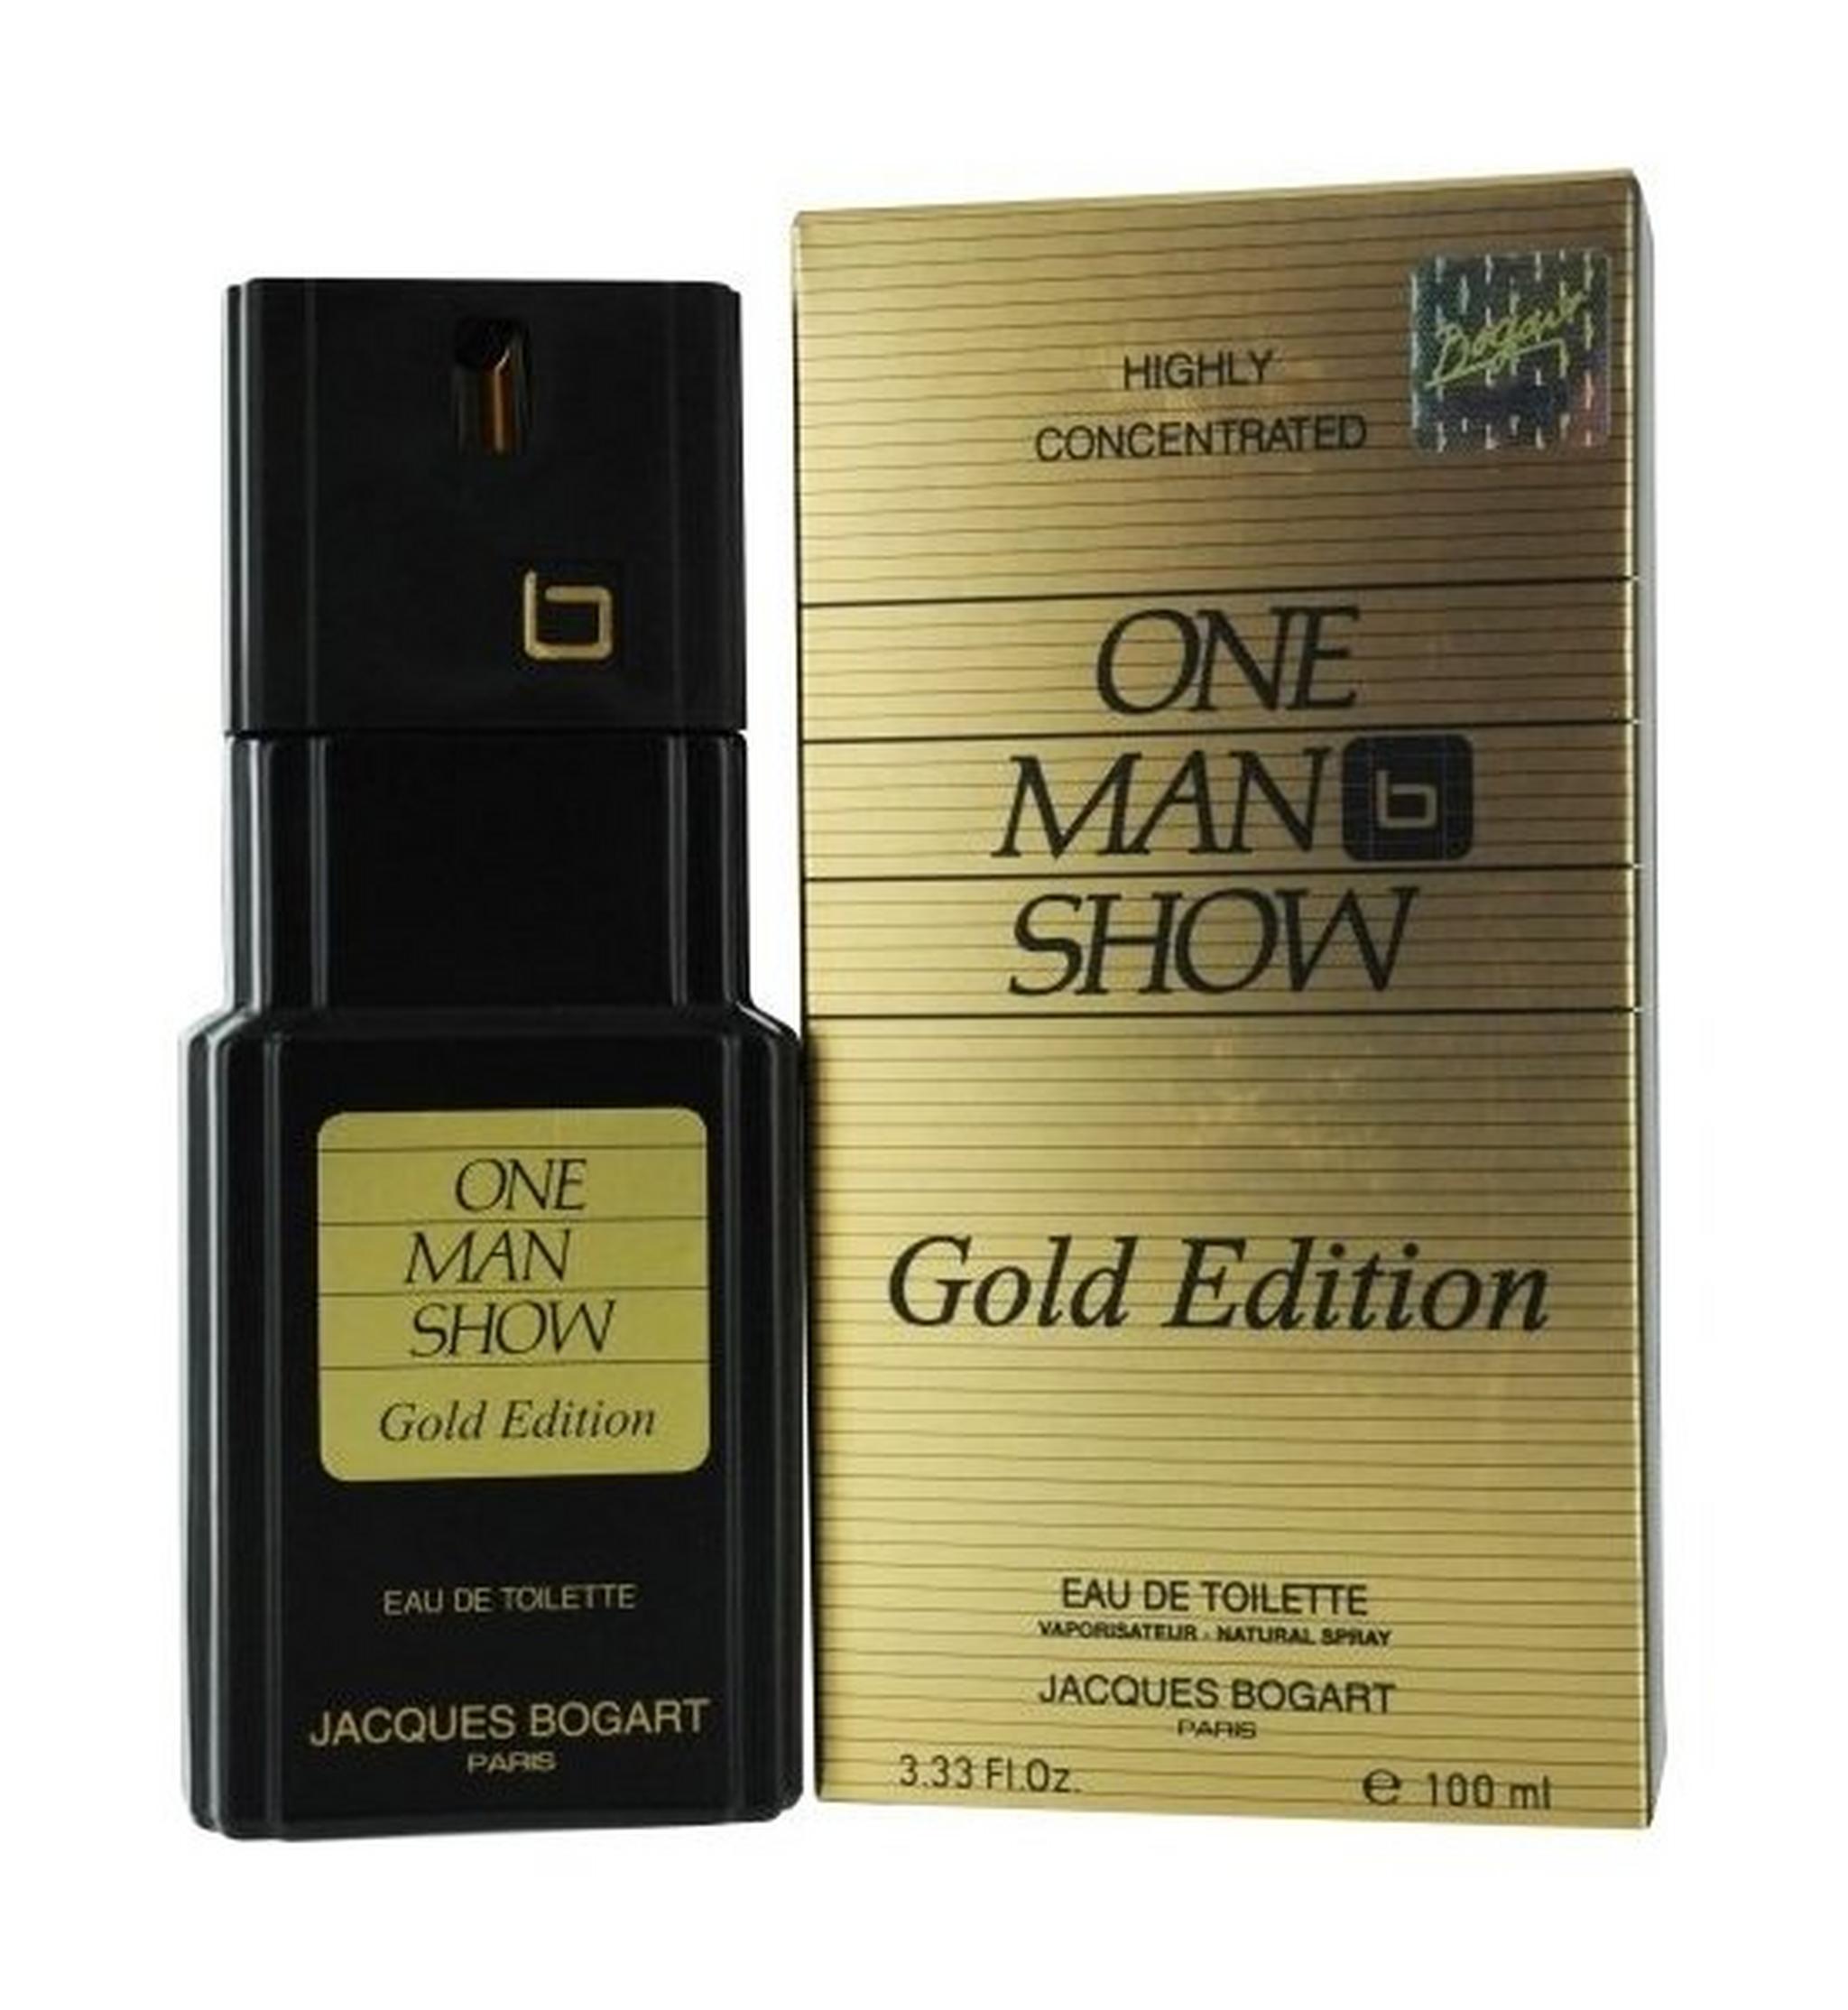 One Man Show Gold Edition by Jacques Bogart for Men 100 ml Eau De Toilette